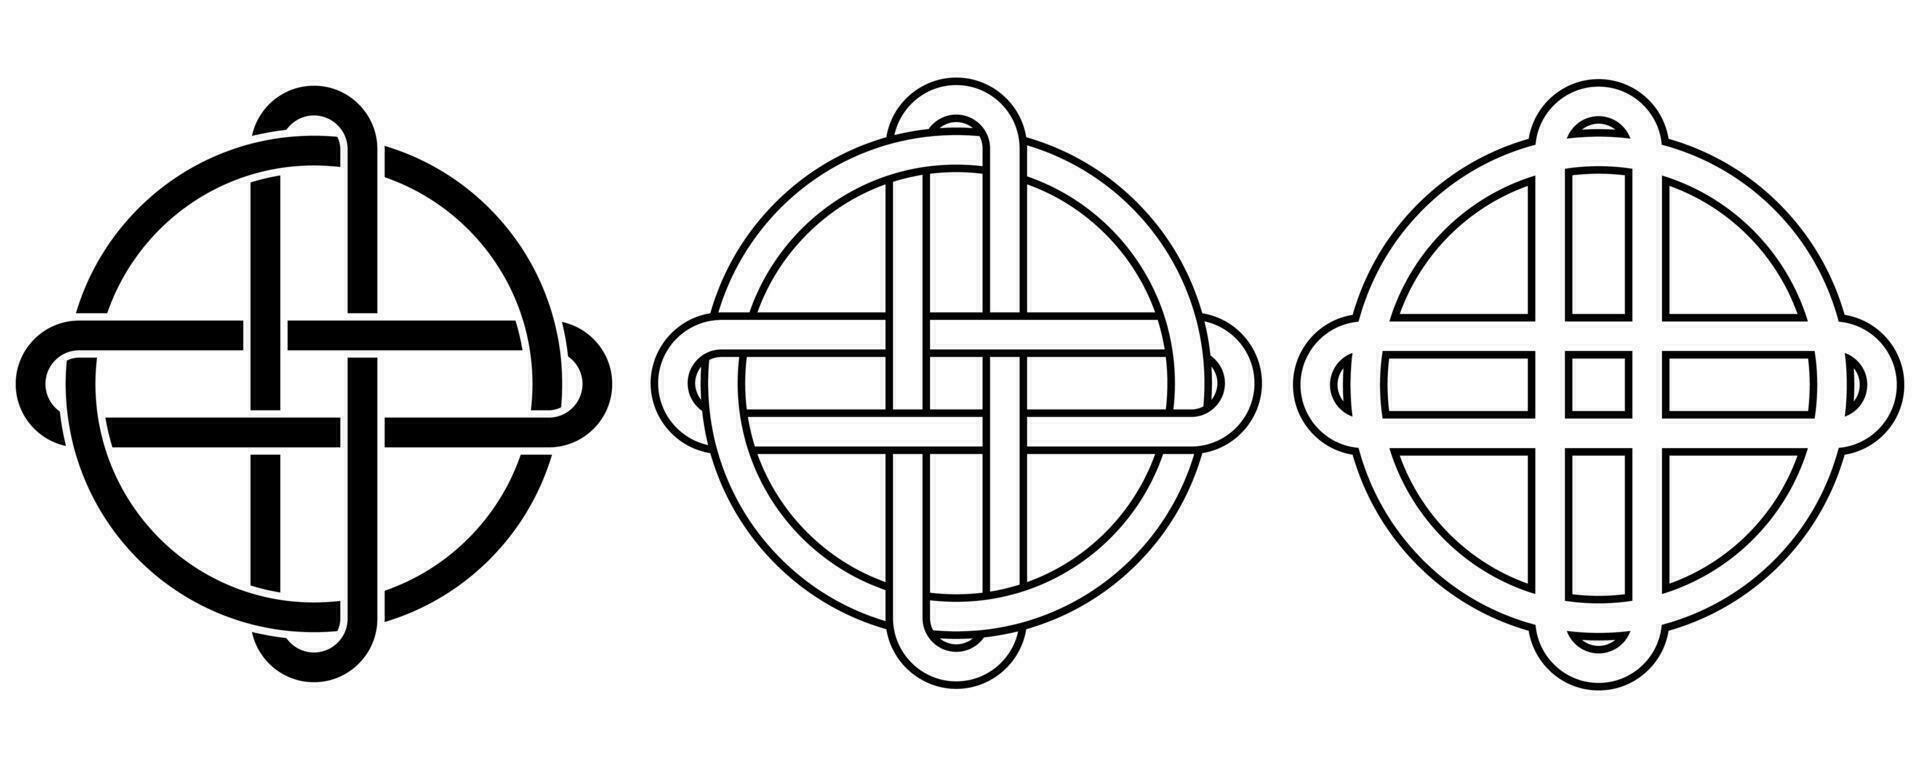 översikt cirkel korsa celtic Knut tecken vektor